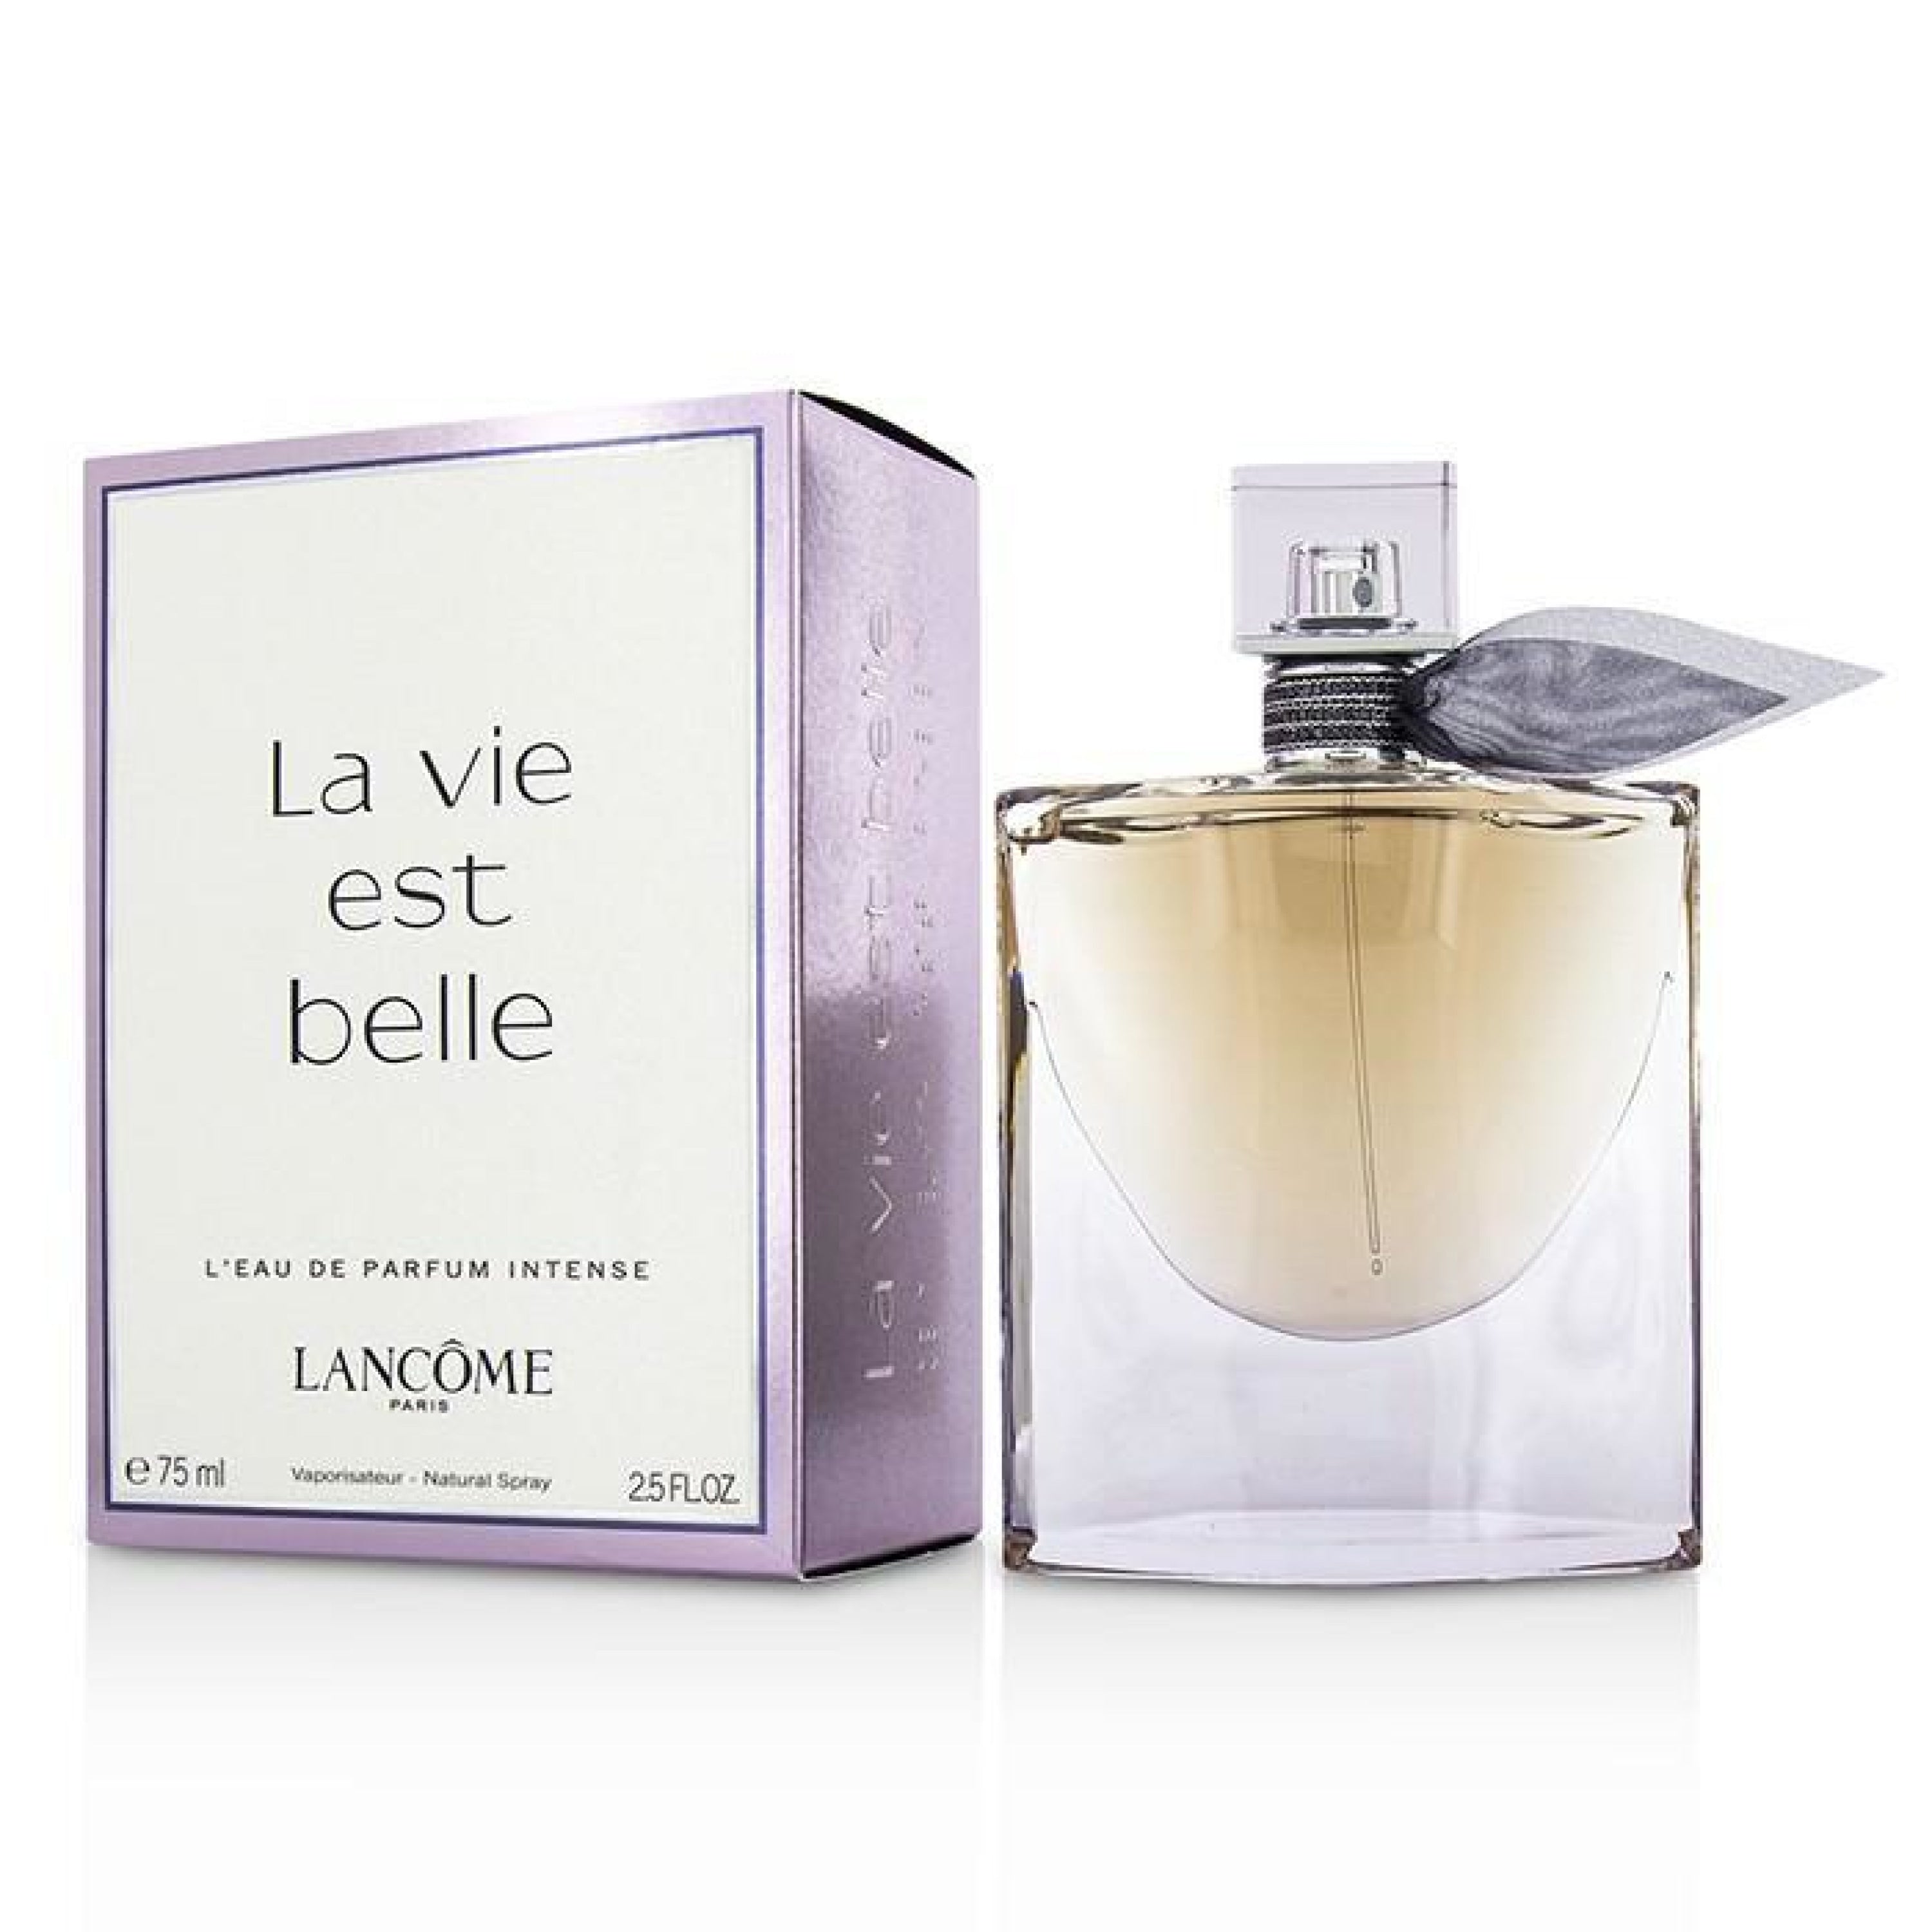 Lancome La Vie Est Belle Leau De Parfum Intense 75Ml Edp Spray (W)